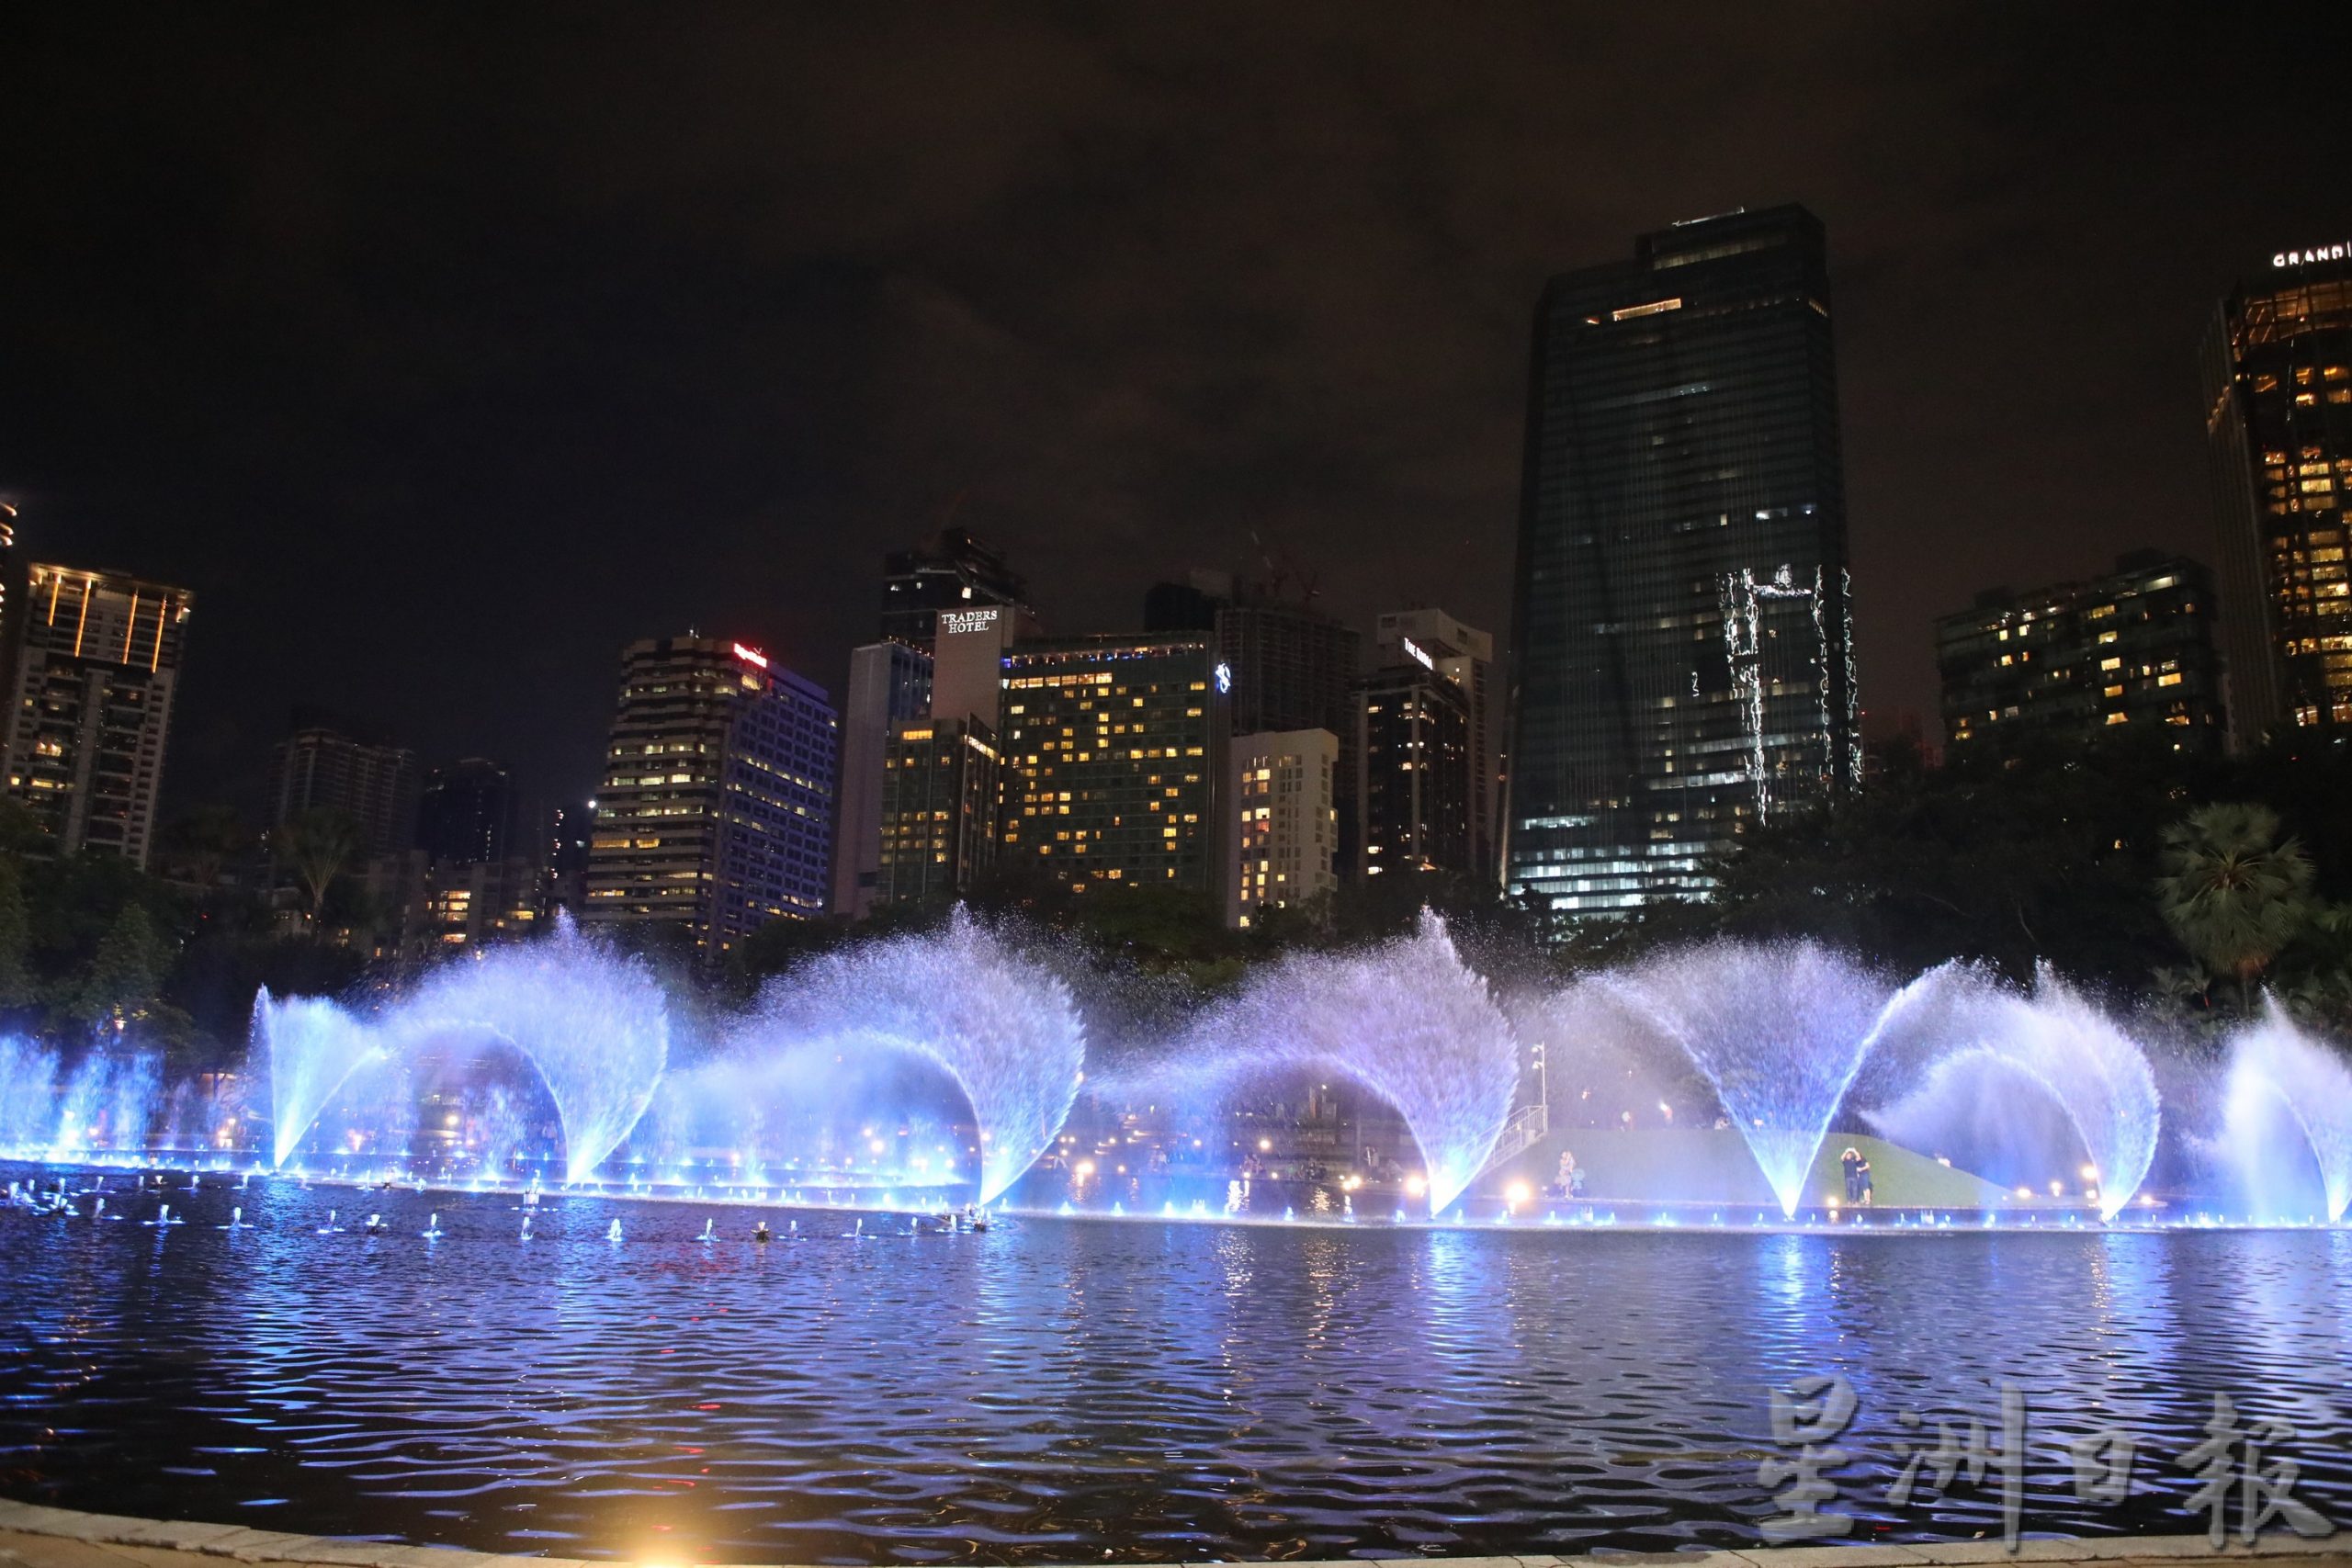 大都会/封底画页/吉隆坡音乐喷泉